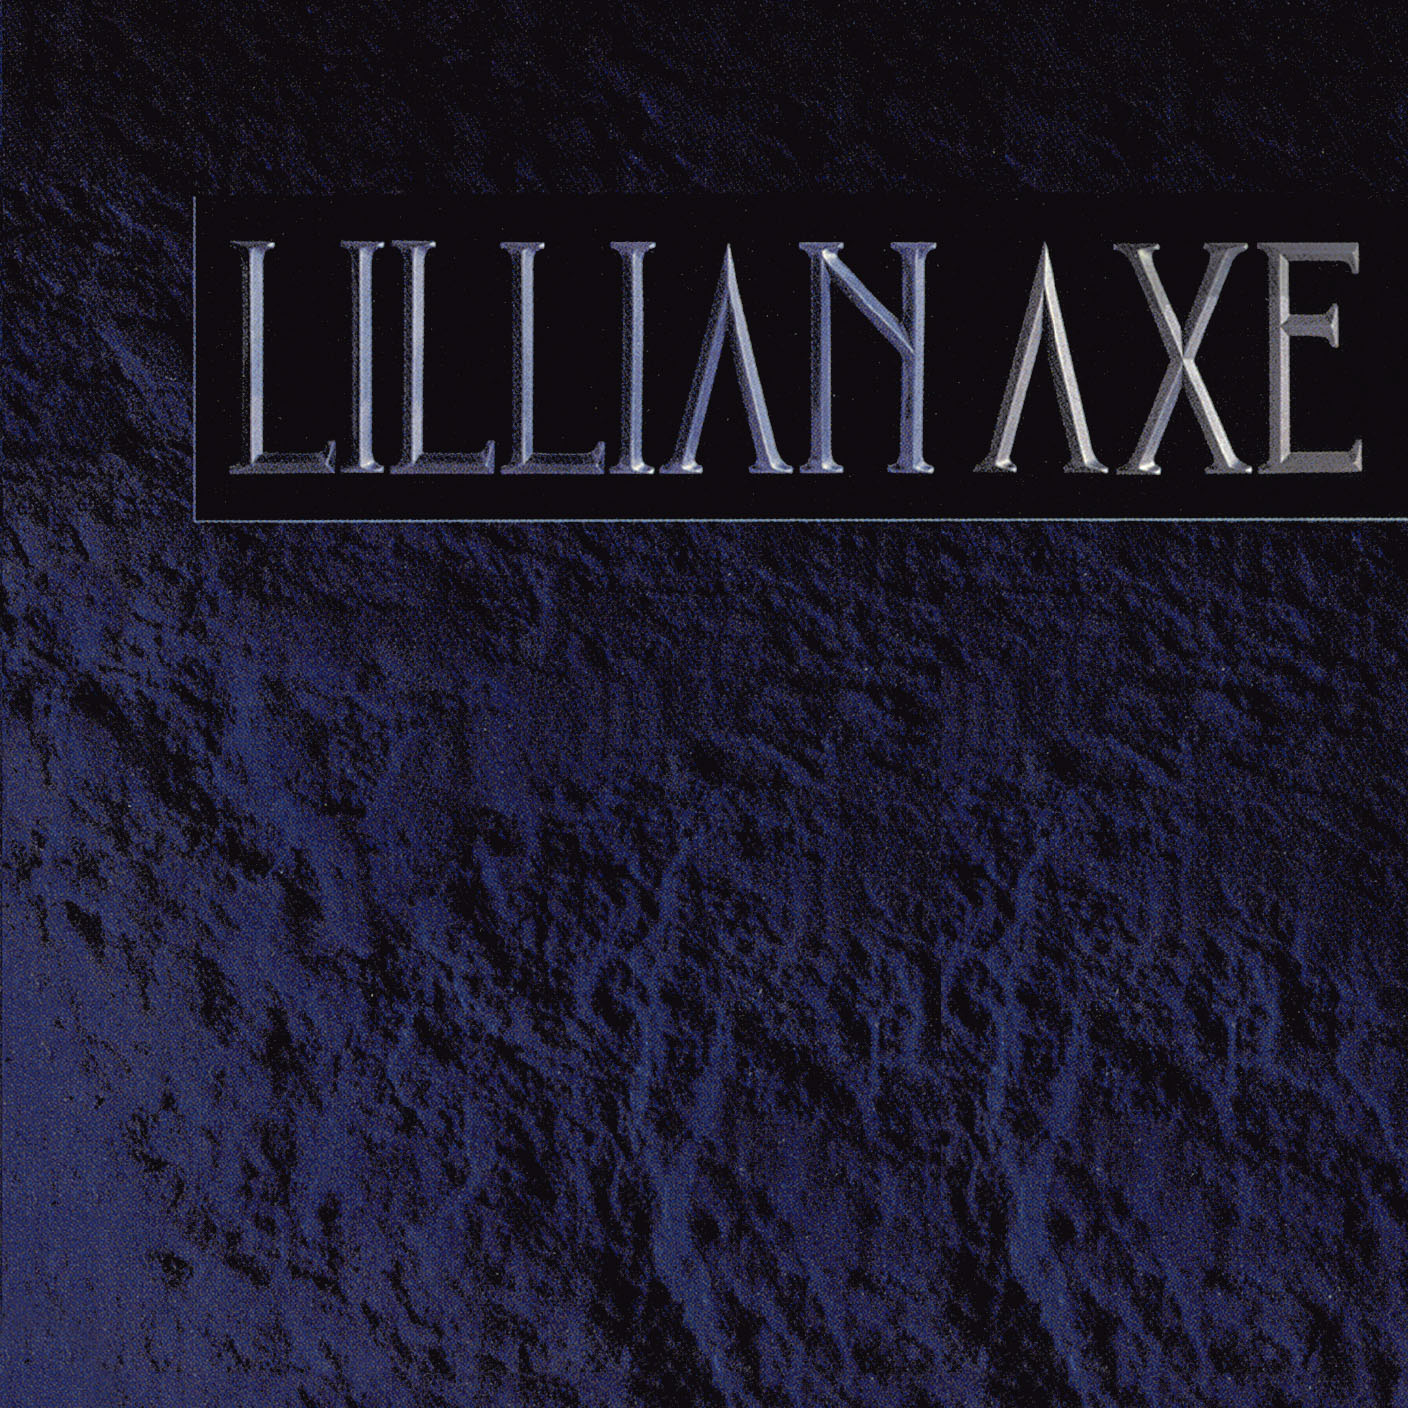 Lillian Axe - Lillian Axe - CD